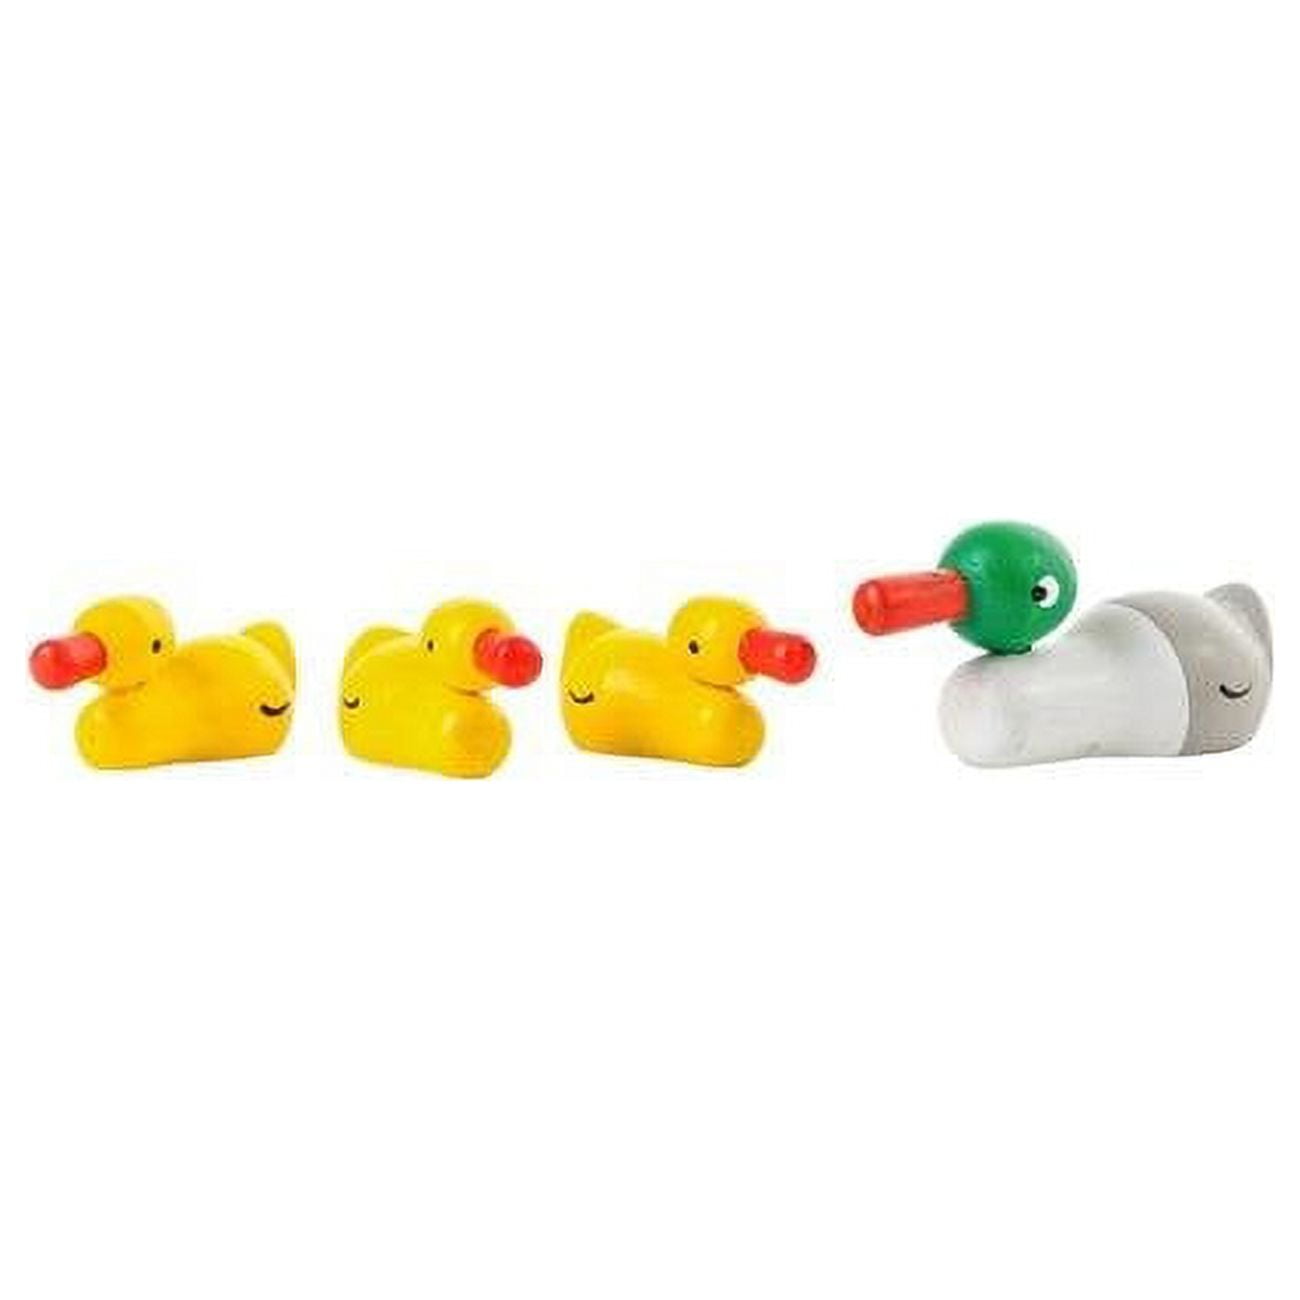 076-004 Dregeno Easter Ornament Duck Family